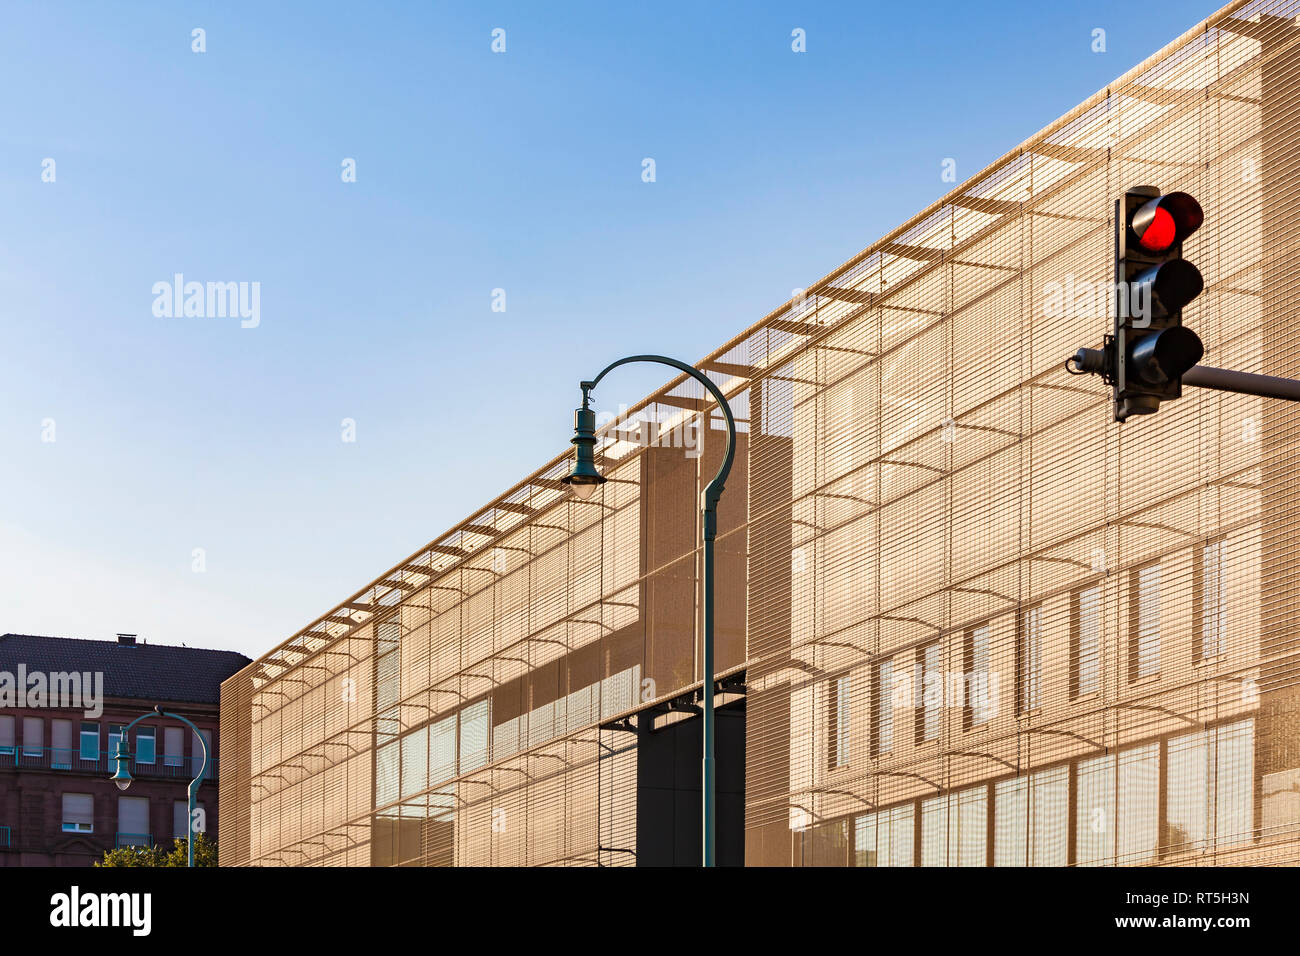 Deutschland, Mannheim, Teil der Fassade des neuen integrierten Kunstgalerie mit Straßenlaterne und rotes Licht im Vordergrund. Stockfoto